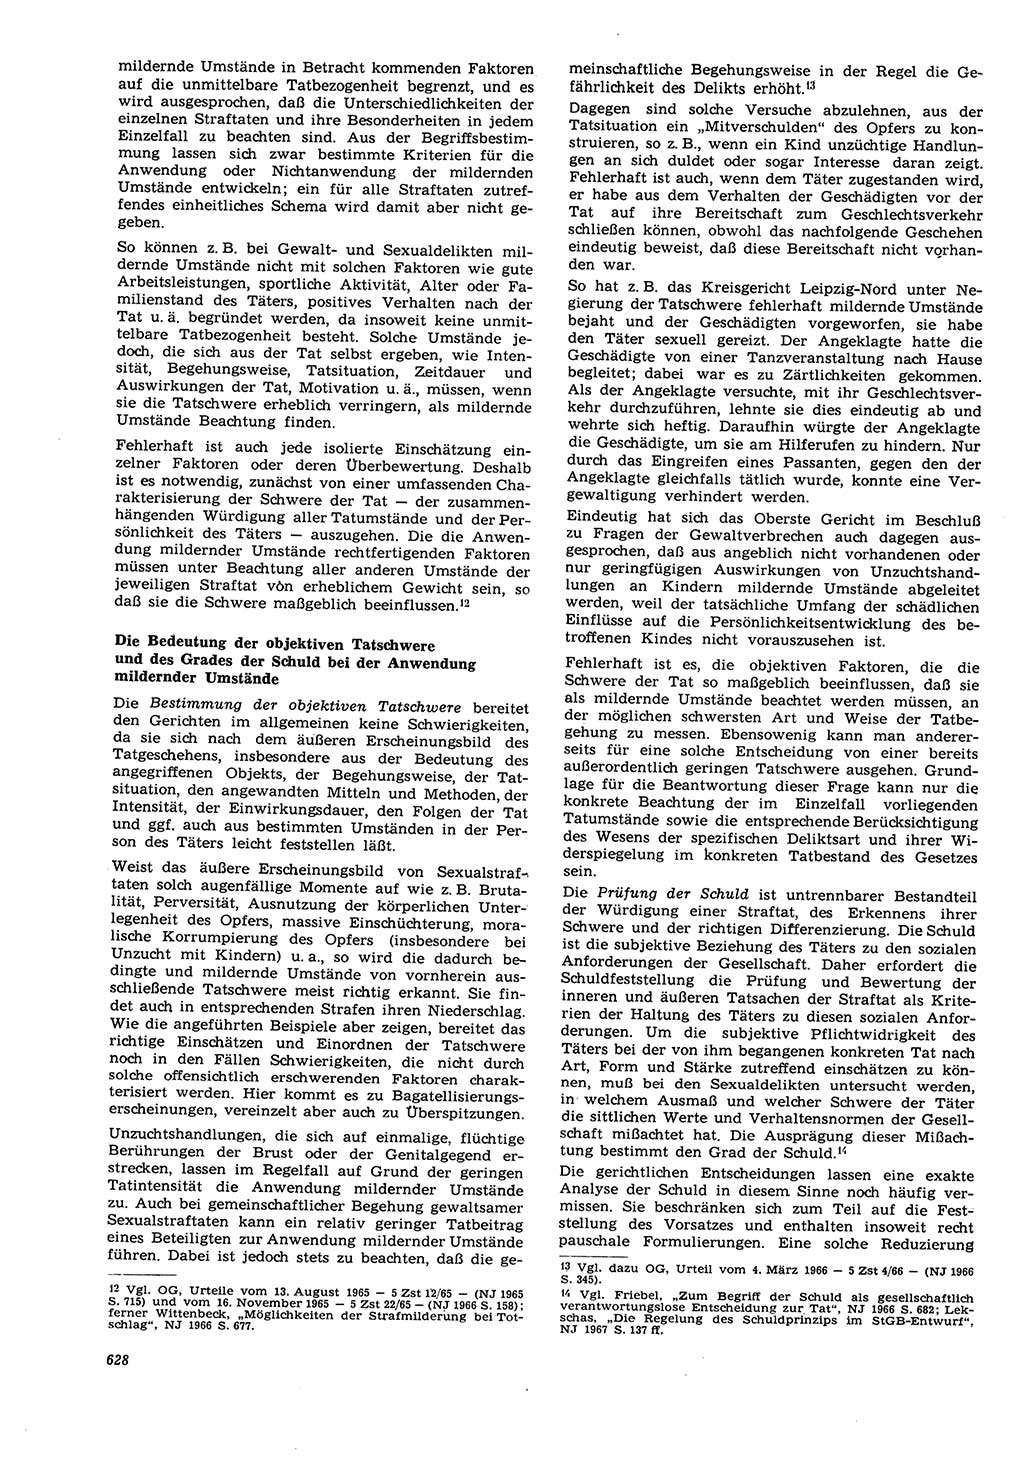 Neue Justiz (NJ), Zeitschrift für Recht und Rechtswissenschaft [Deutsche Demokratische Republik (DDR)], 21. Jahrgang 1967, Seite 628 (NJ DDR 1967, S. 628)